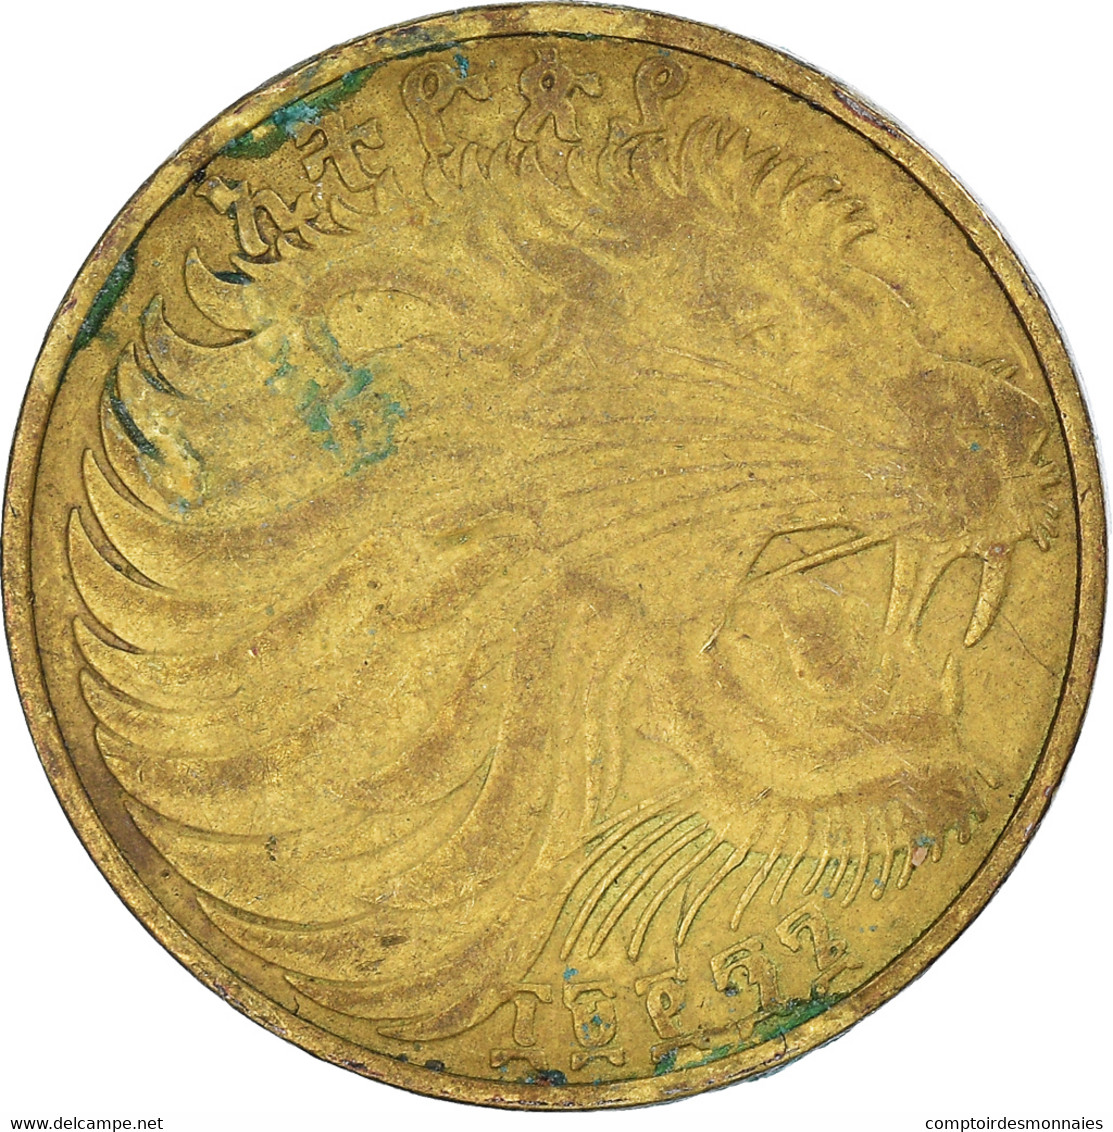 Monnaie, Éthiopie, 10 Cents, Assir Santeem, 1996 - Ethiopia